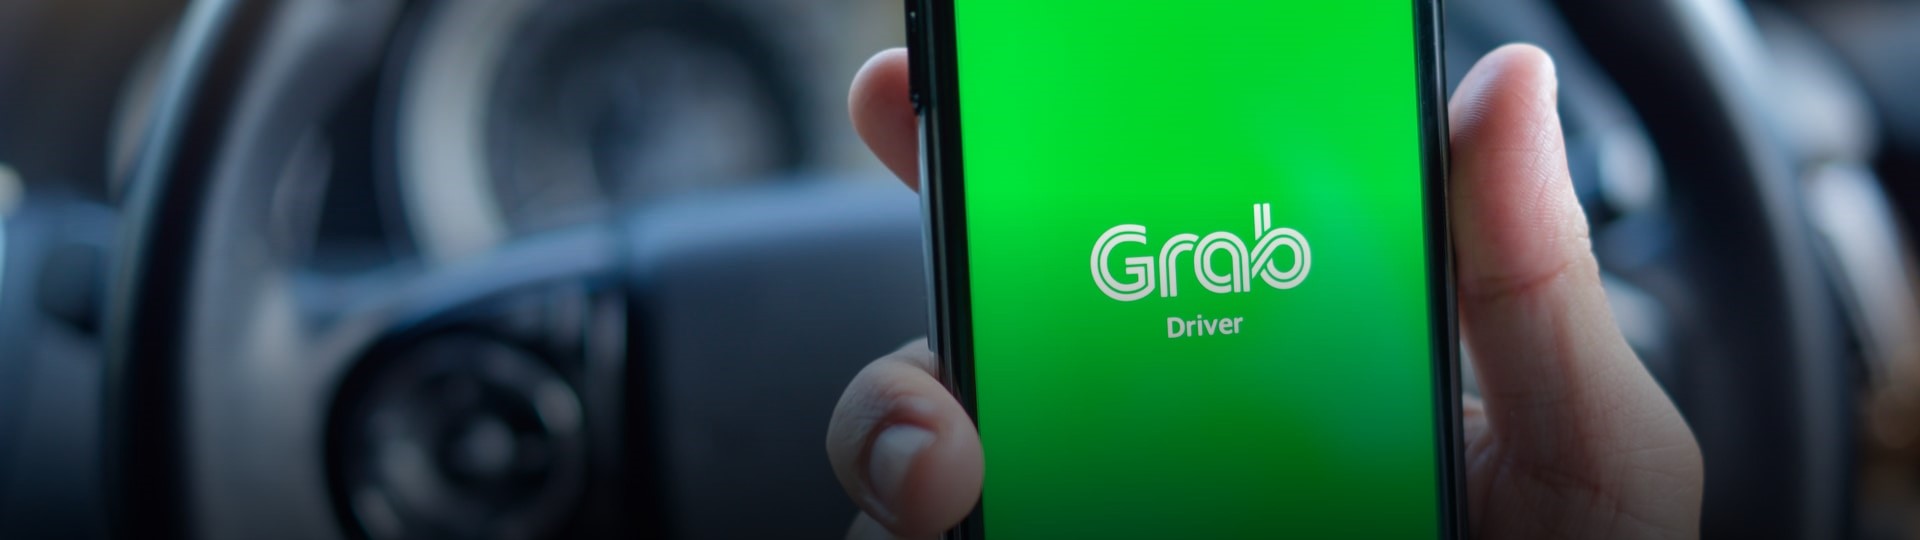 Alternativní taxislužba Grab vstupuje v rekordní transakci na burzu